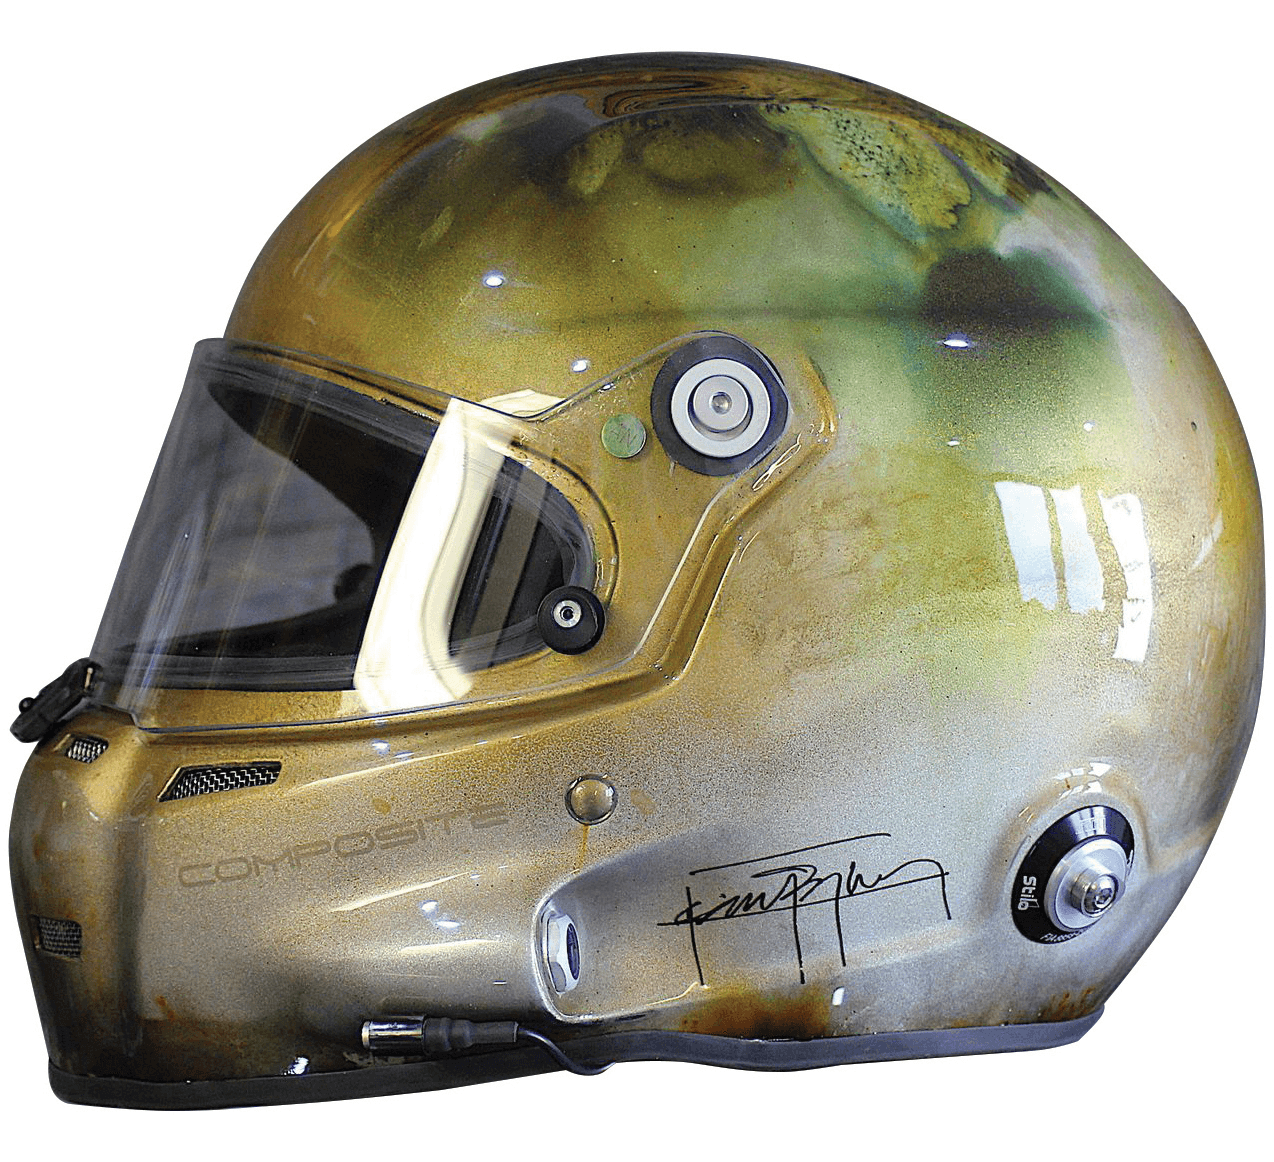 Helmet 4 ART CAR by Jean BOGHOSSIAN